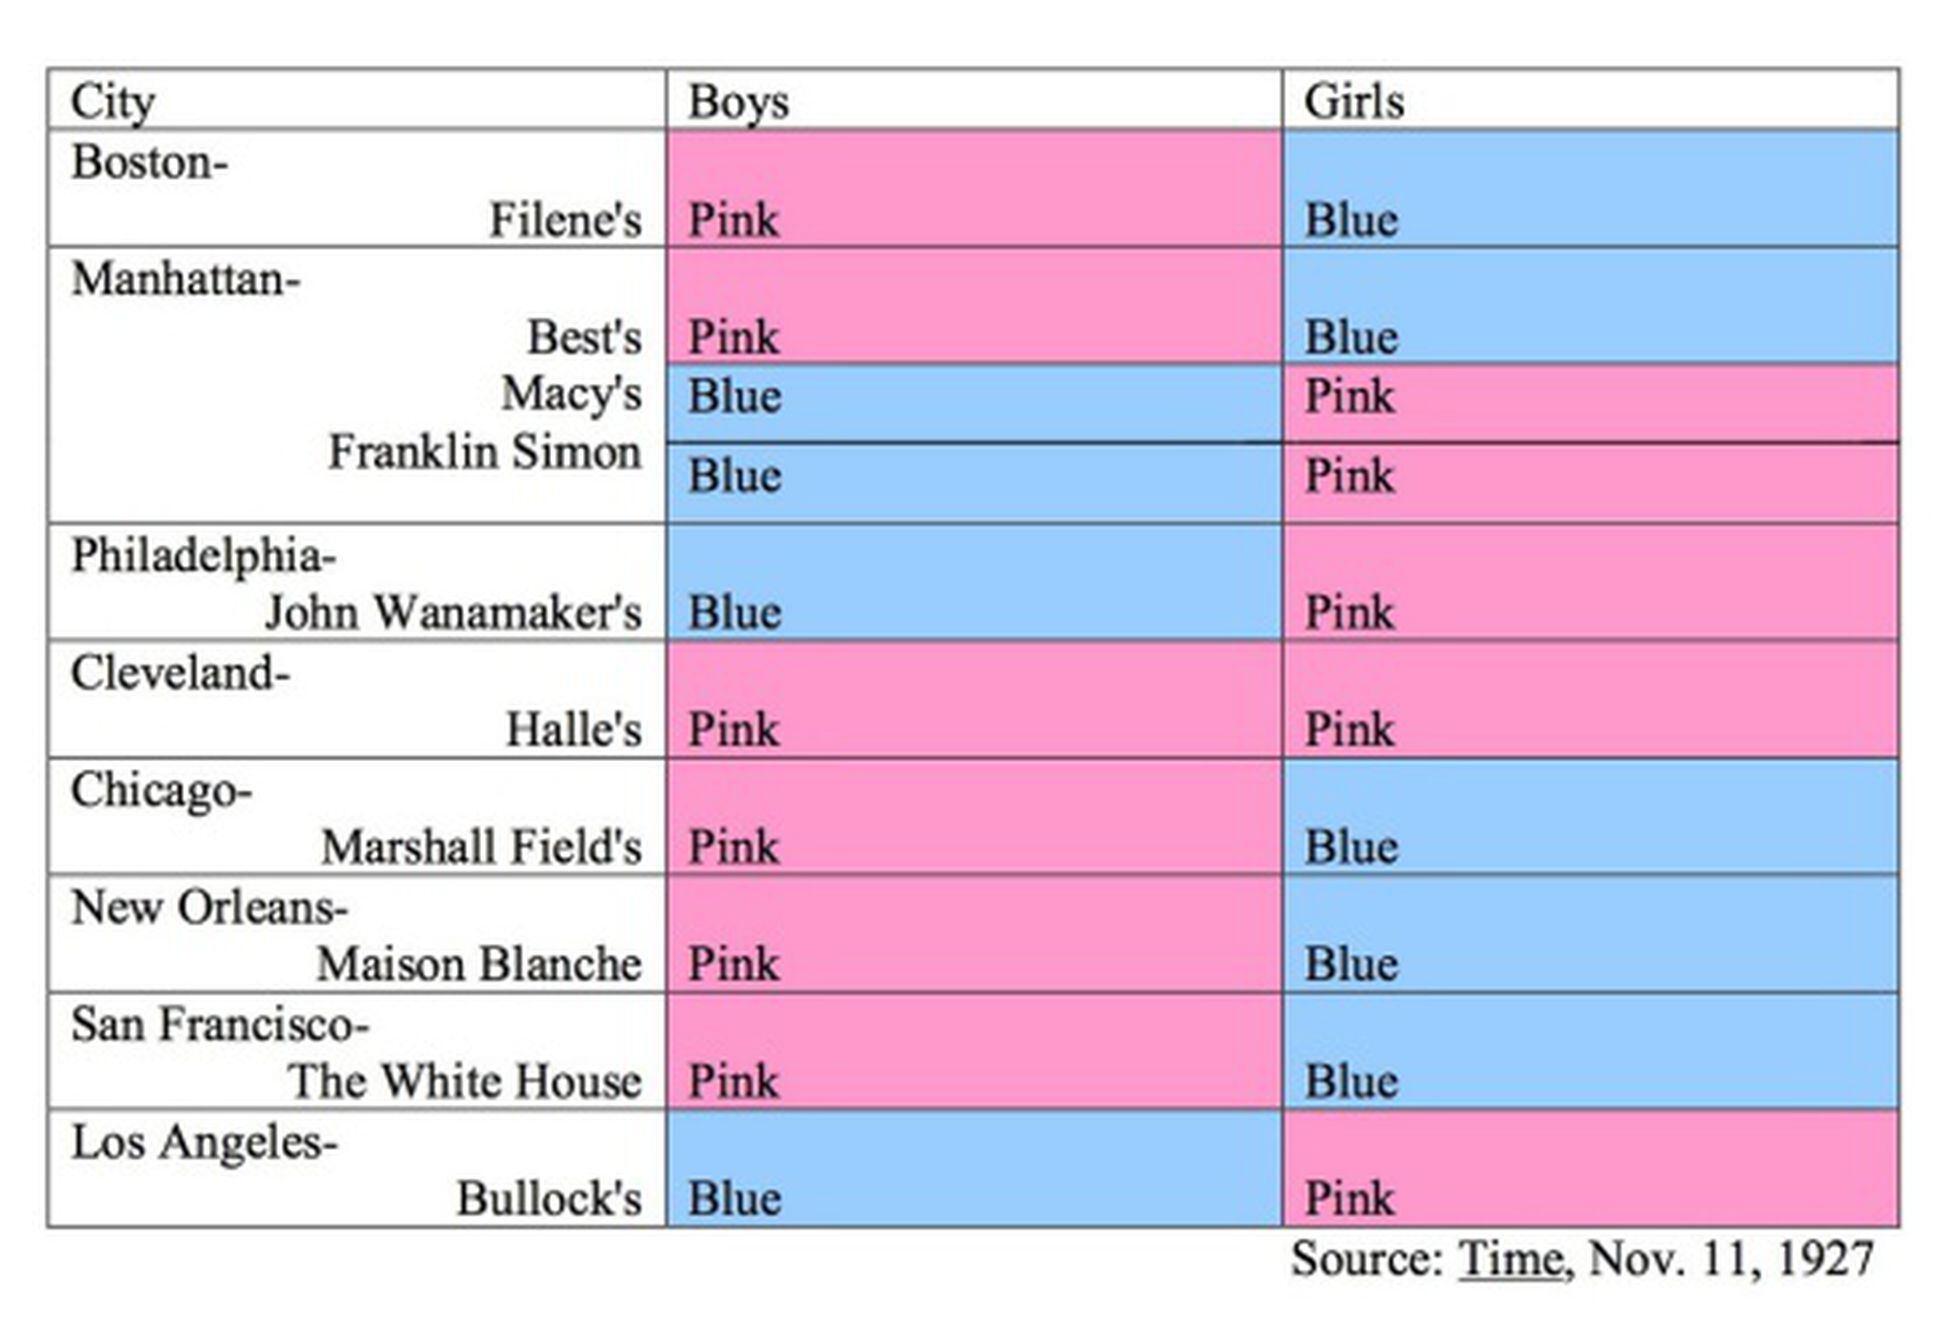 Porquê rosa para as meninas e azul para os meninos?